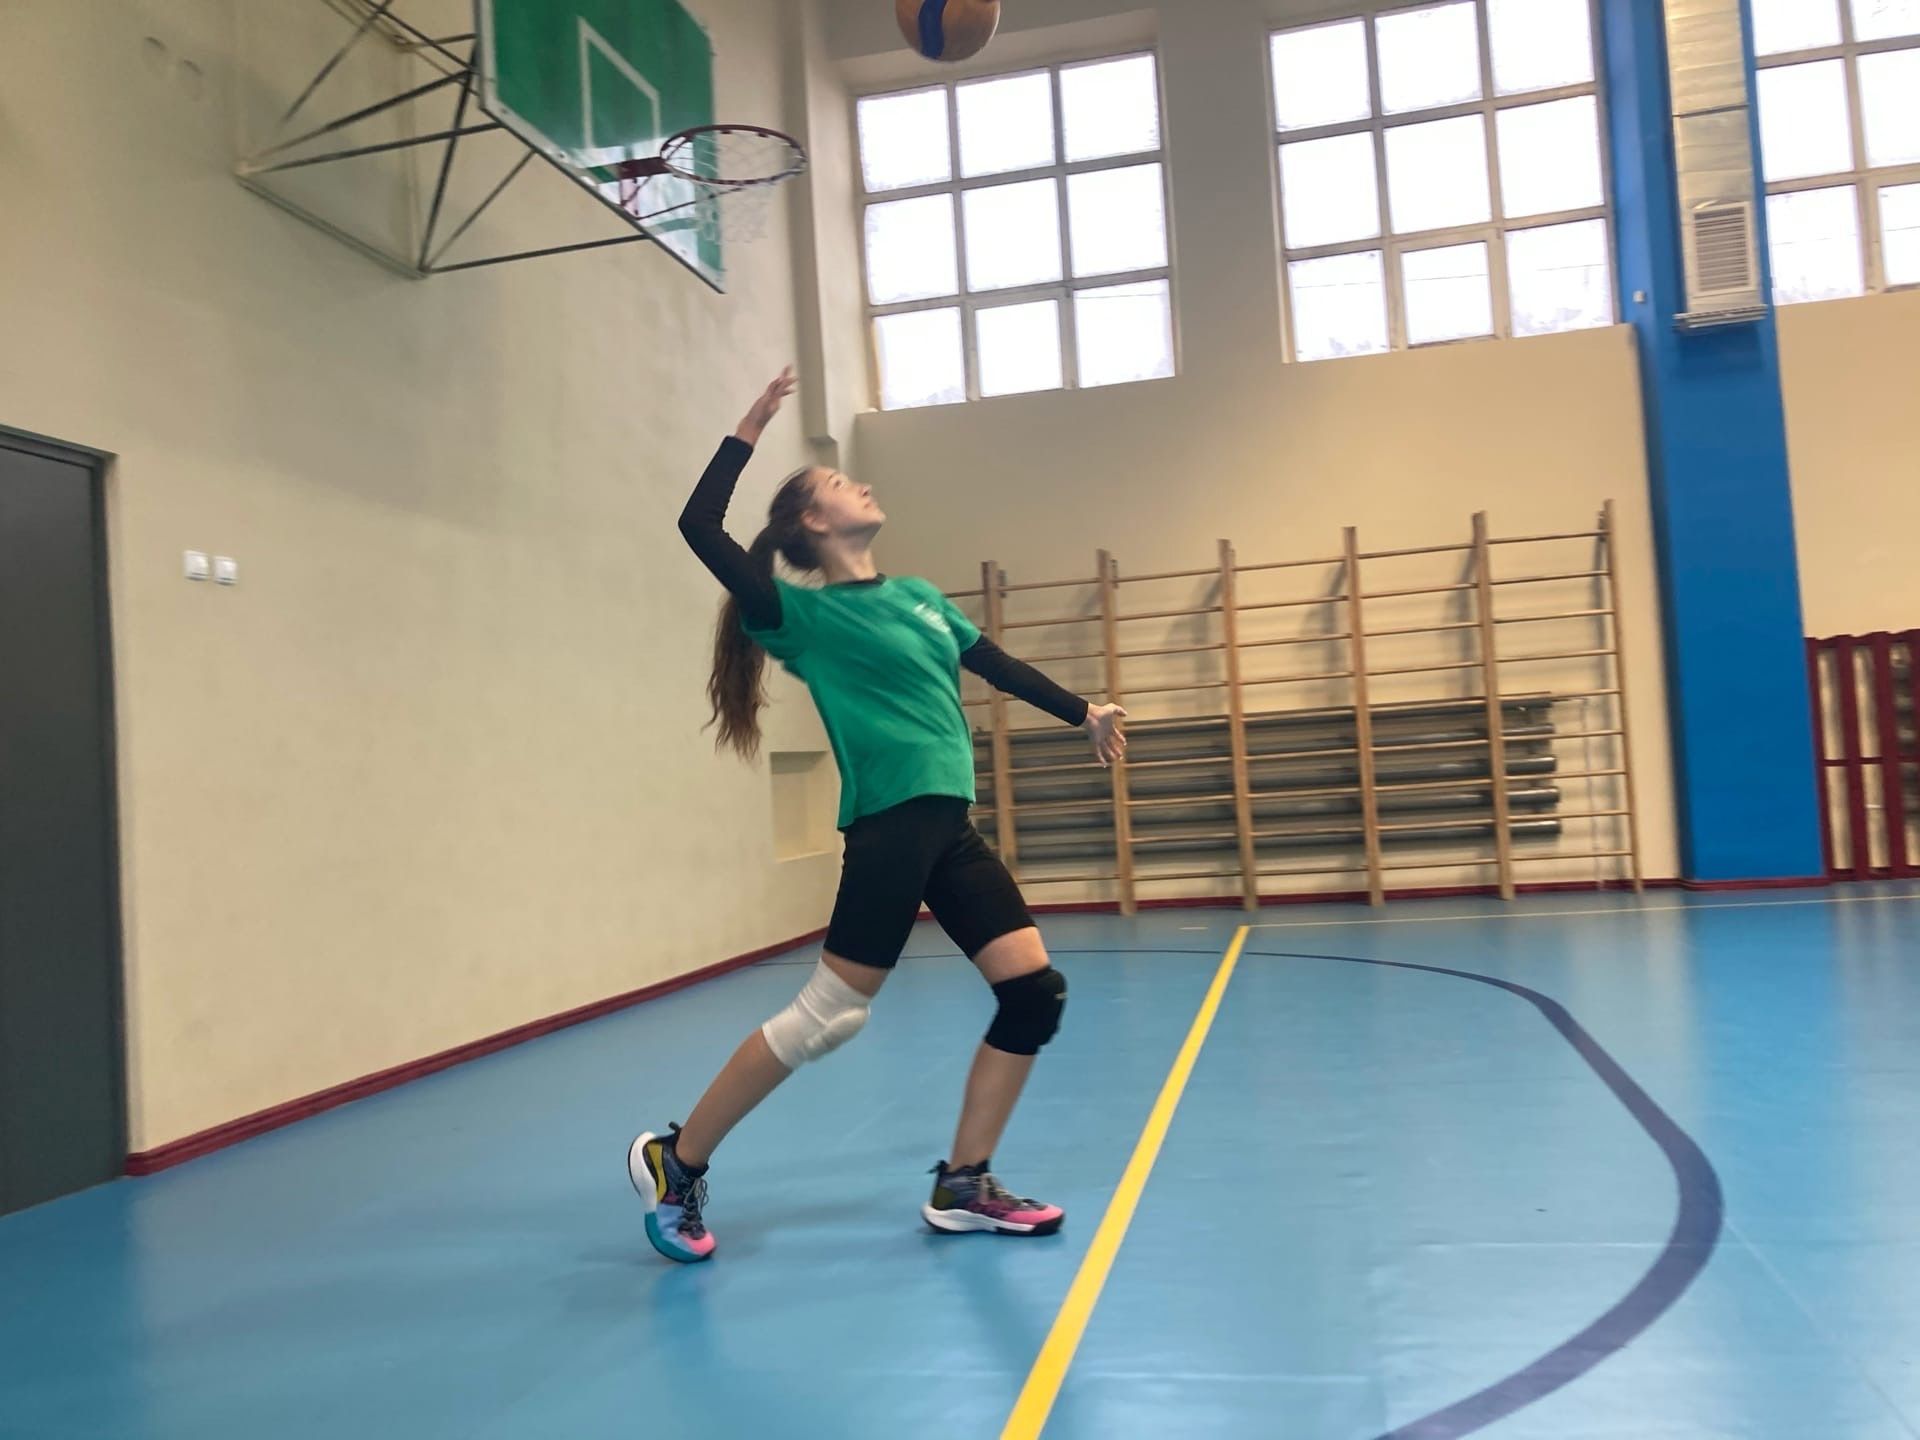 В Чистополе прошел турнир по волейболу среди девушек